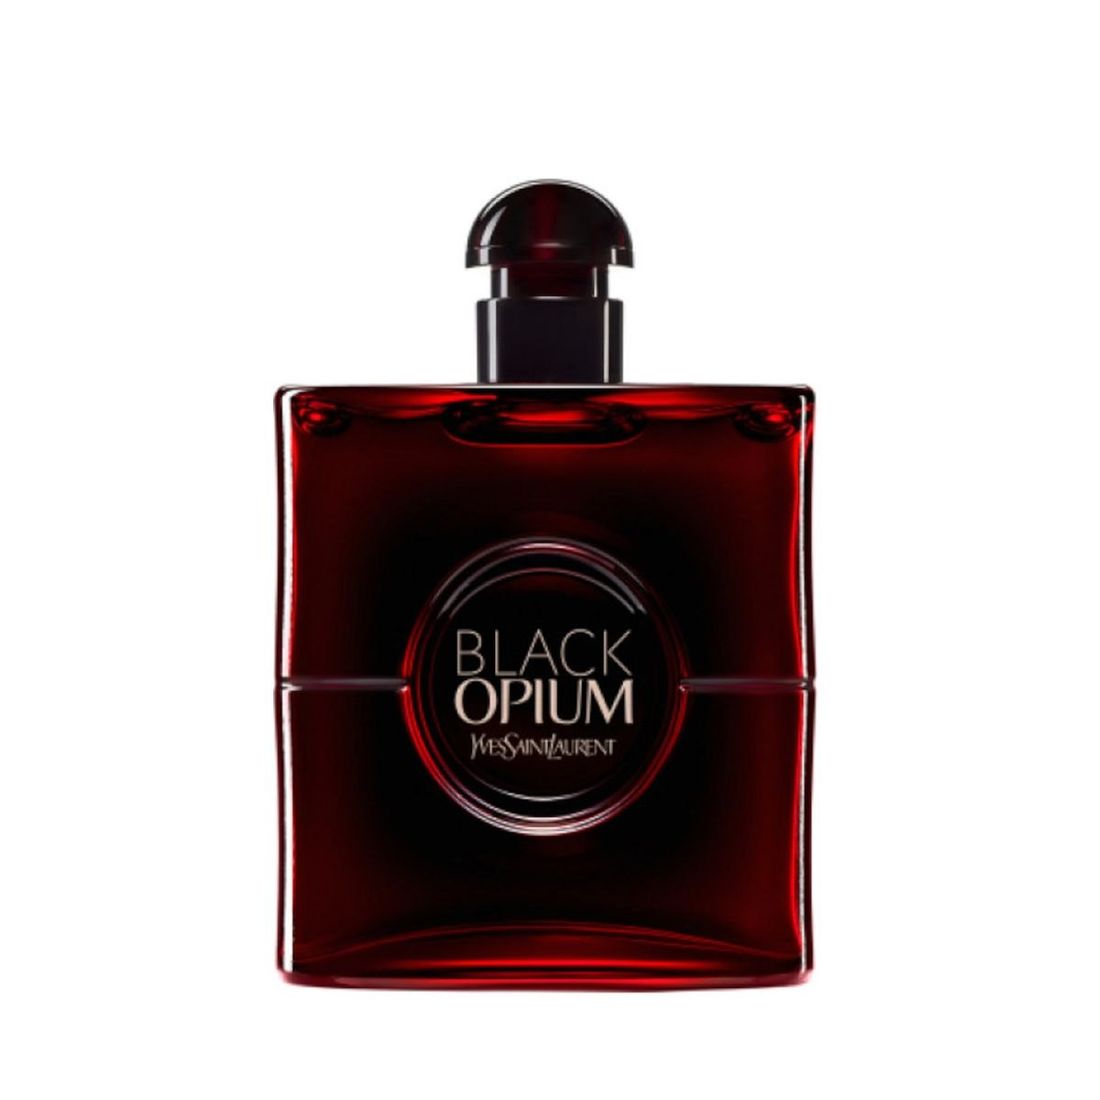 yves saint laurent black opium over red